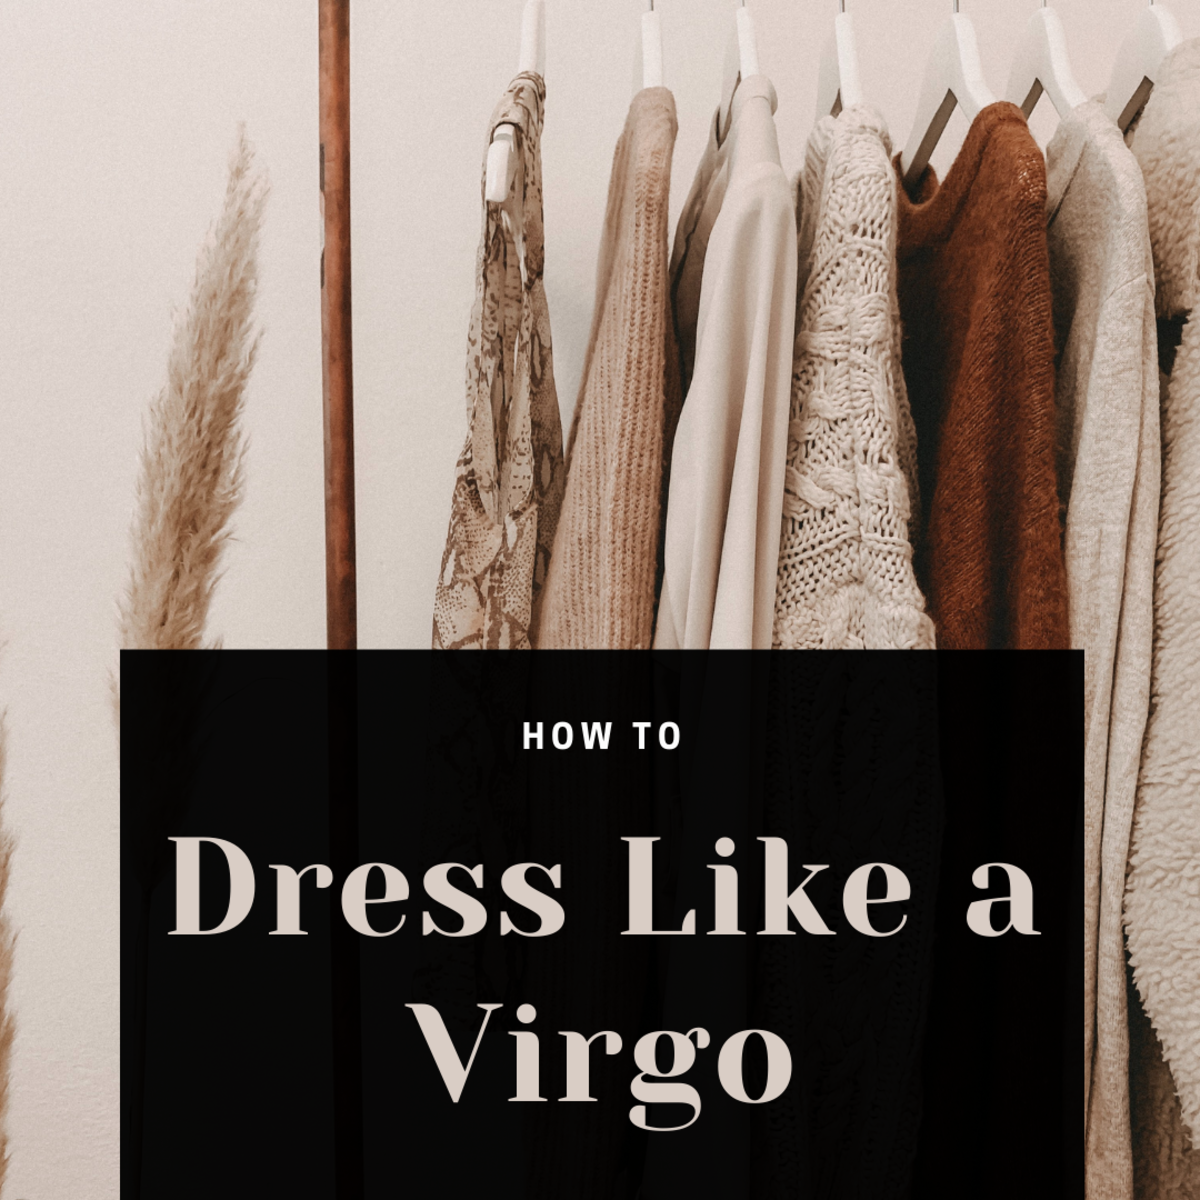 How to Dress Like a Virgo